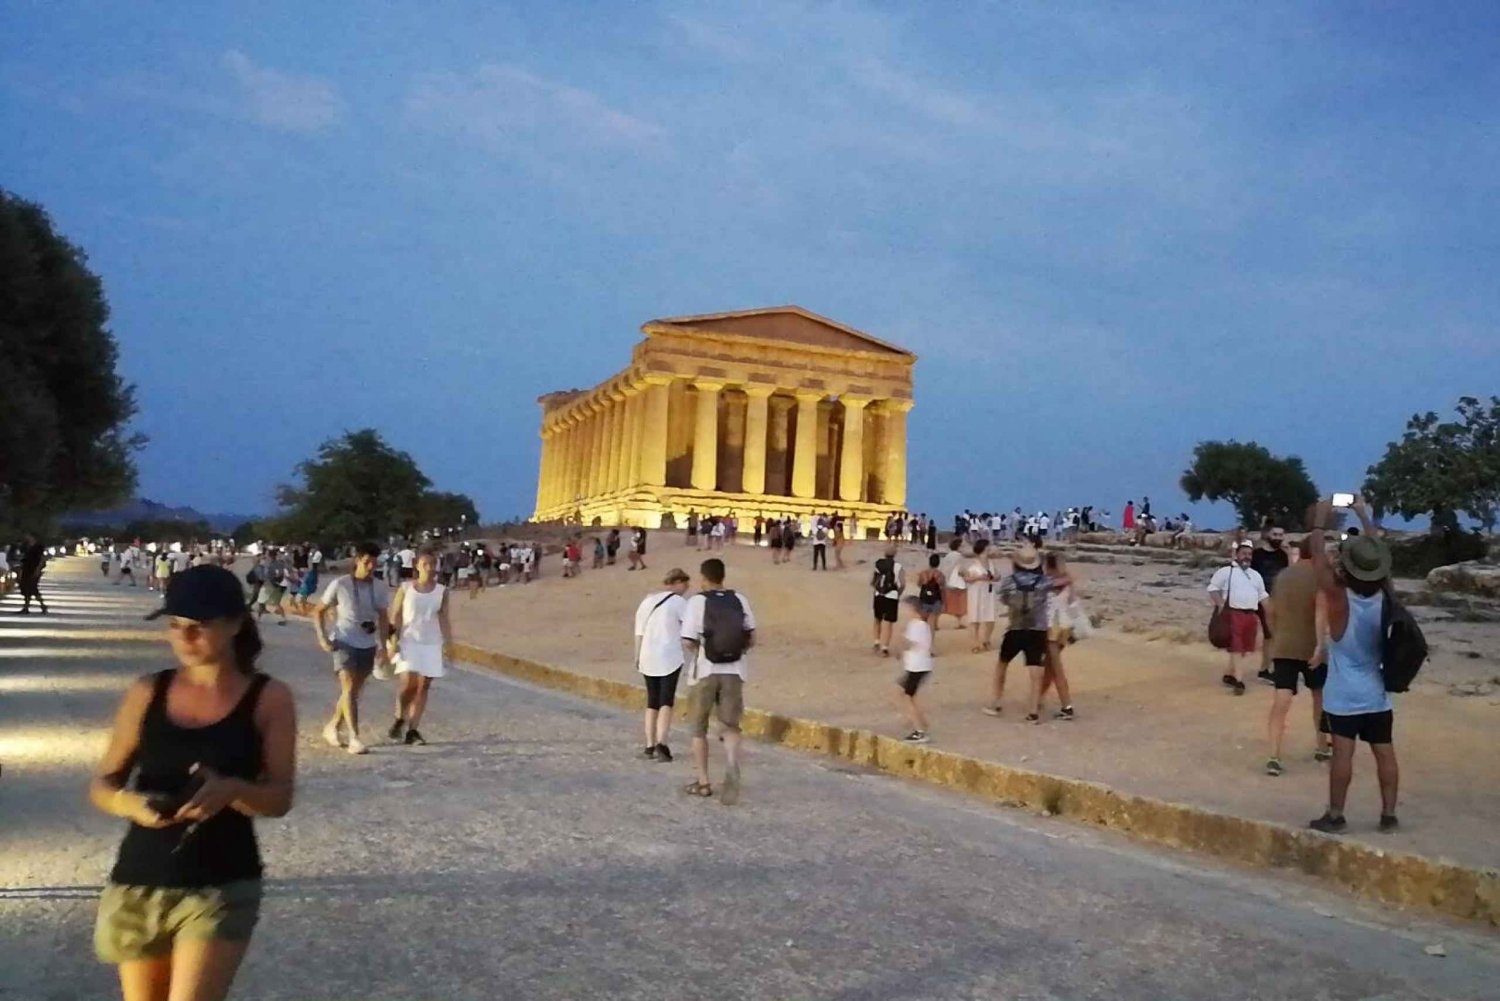 Agrigento: Skip-the-Line avondtour door de Vallei van de Tempels